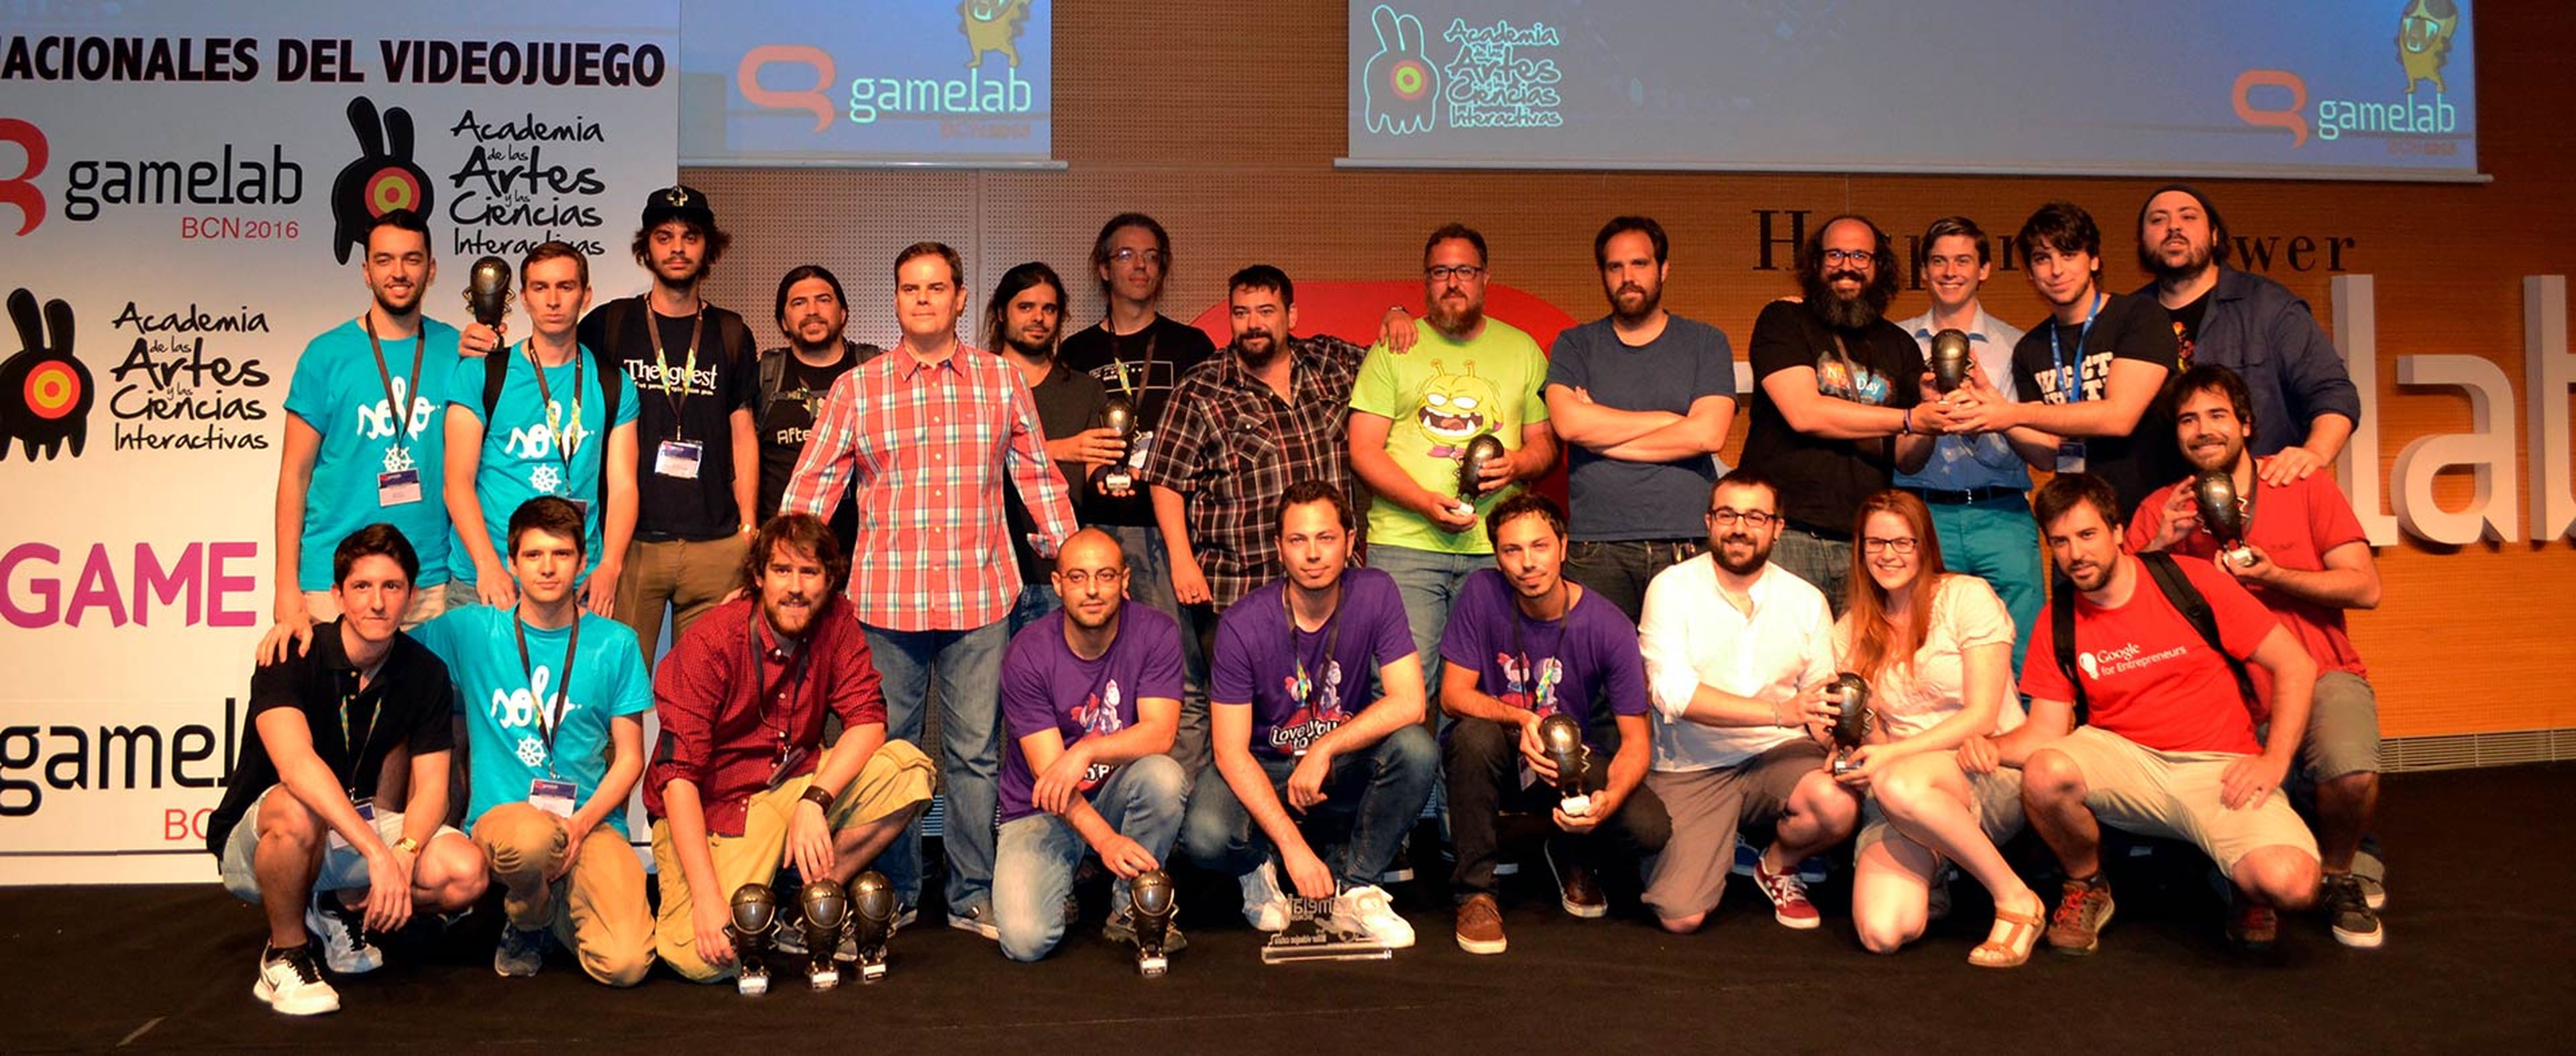 Gamelab 2016 - Ganadores Premios Nacionales del Videojuego